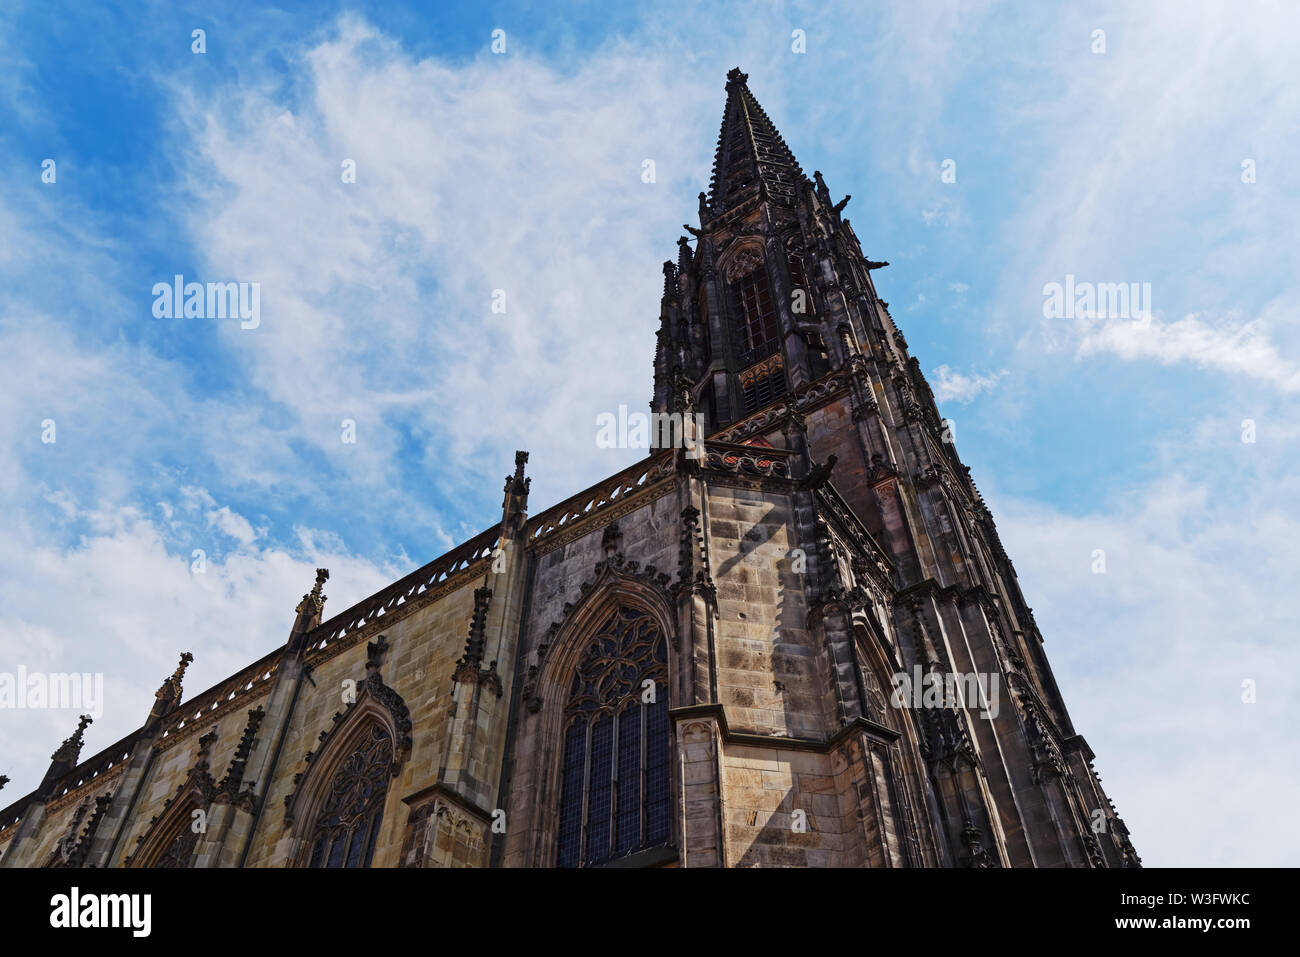 St Lambert's Church against blue sky. Muenster, Germany Stock Photo